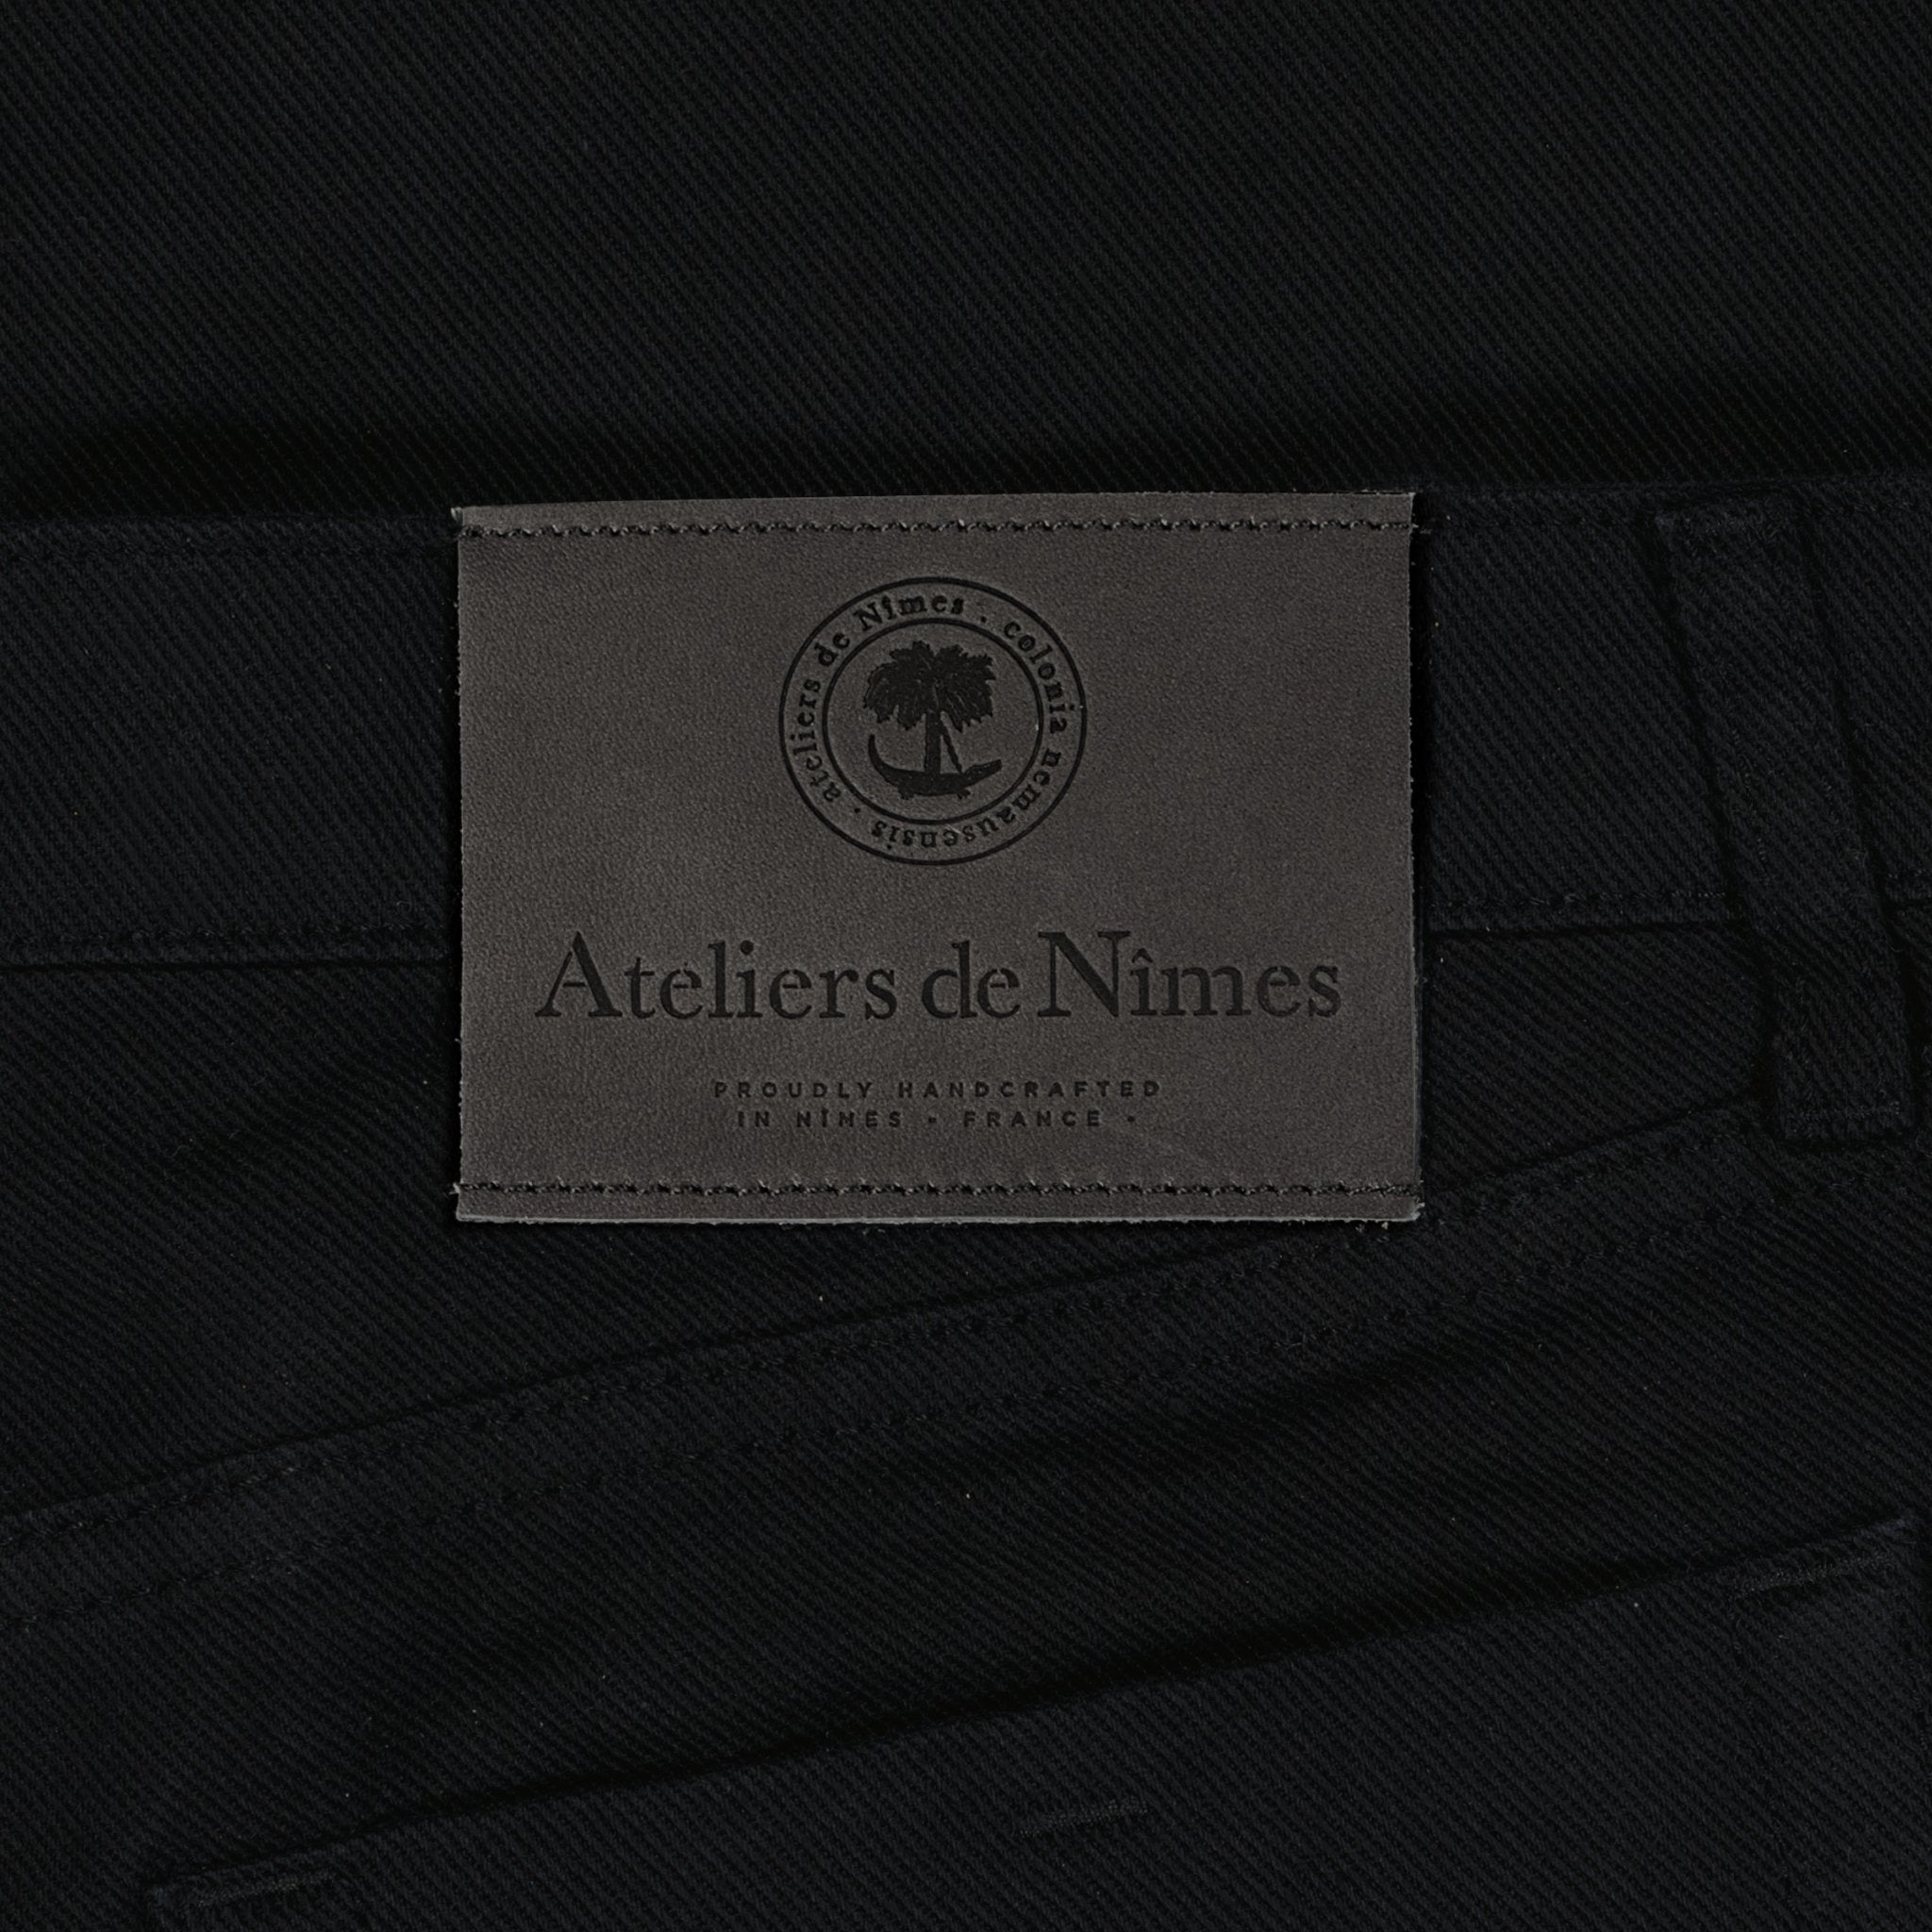 Jeans DN.70 _ Coupe Droite - Ateliers de Nîmes